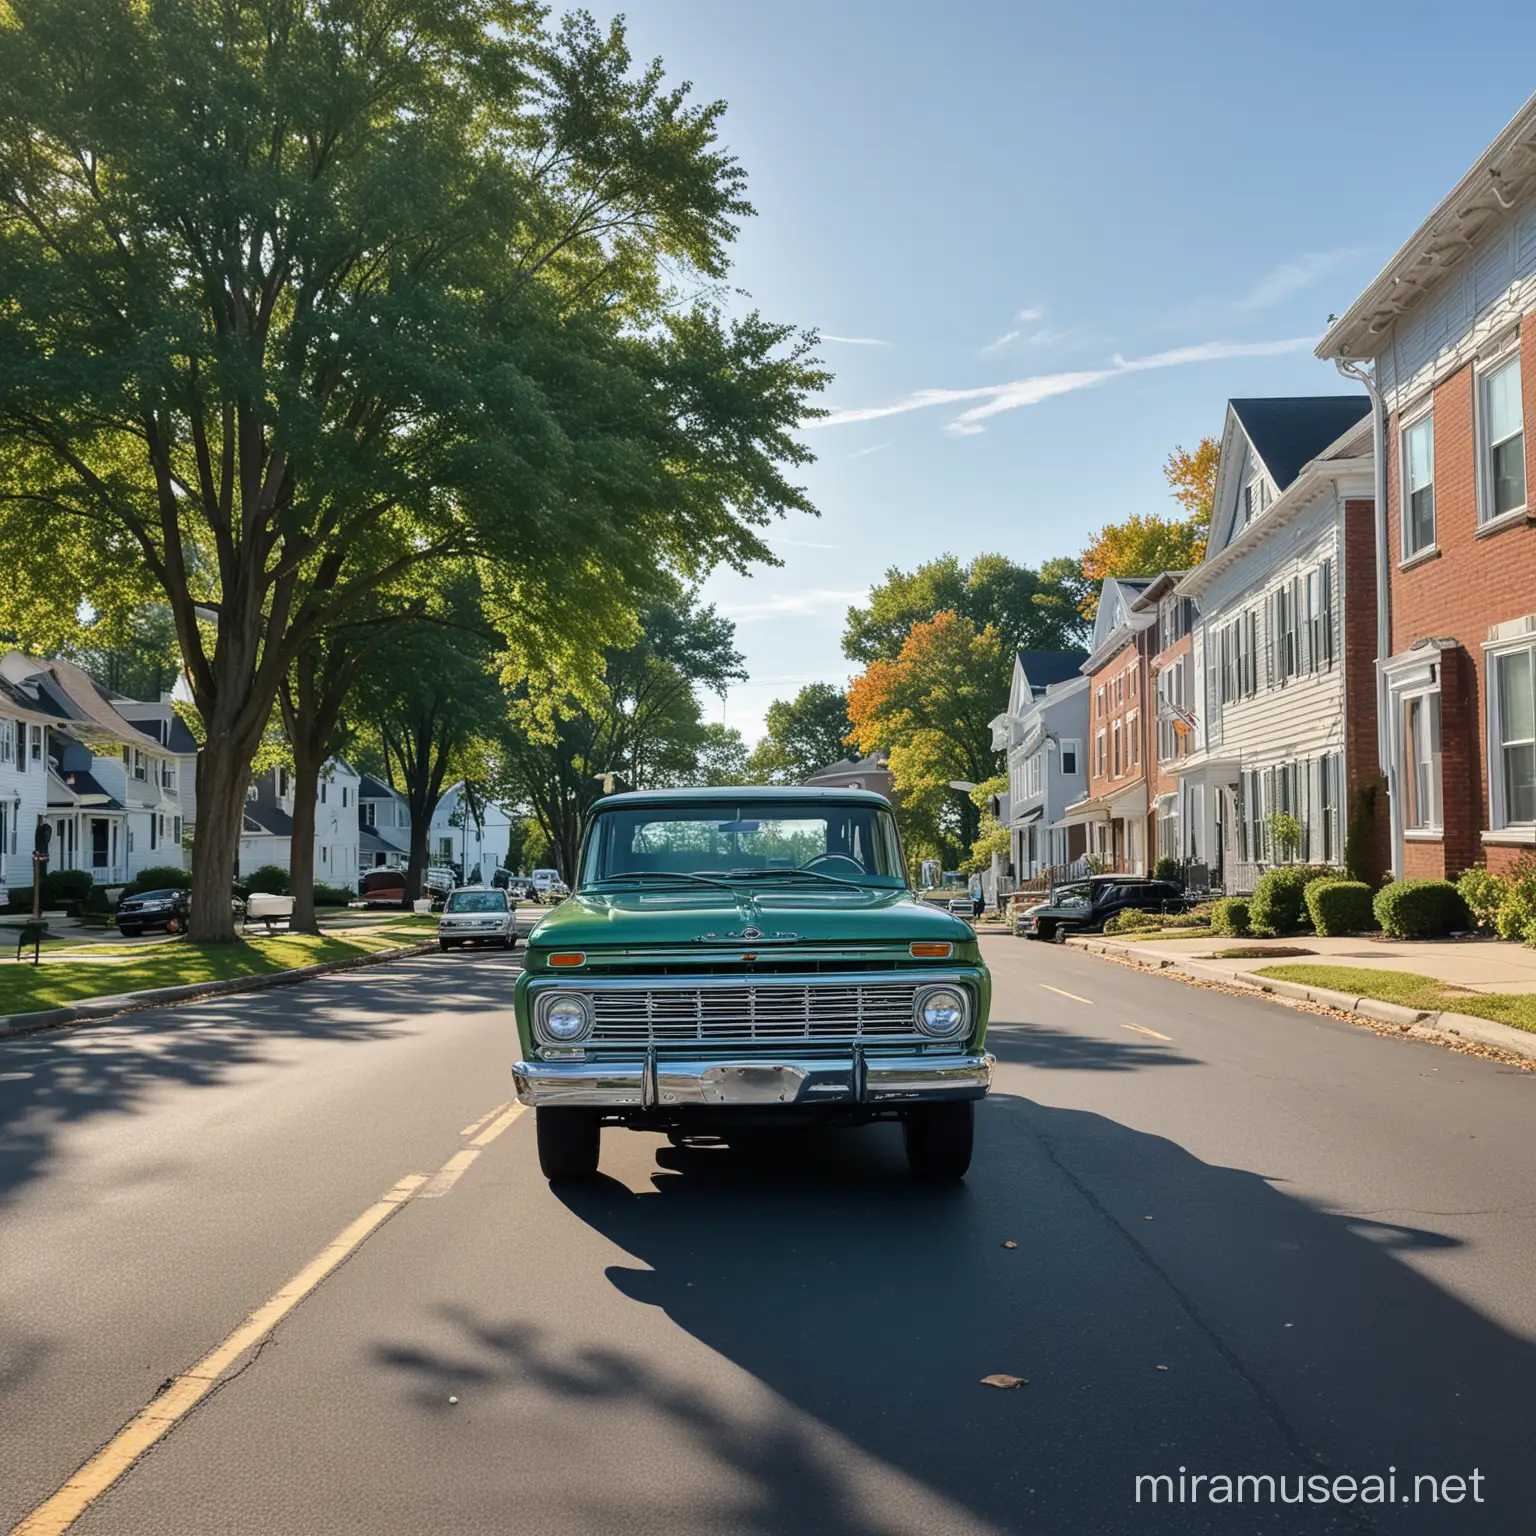 Camioneta Pick Up con Caravan 1964, clásica, color verde metalizado, estacionado en una calle de Concord New Hampshire, a las 9 de la mañana día de cielo despejado y azul intenso.